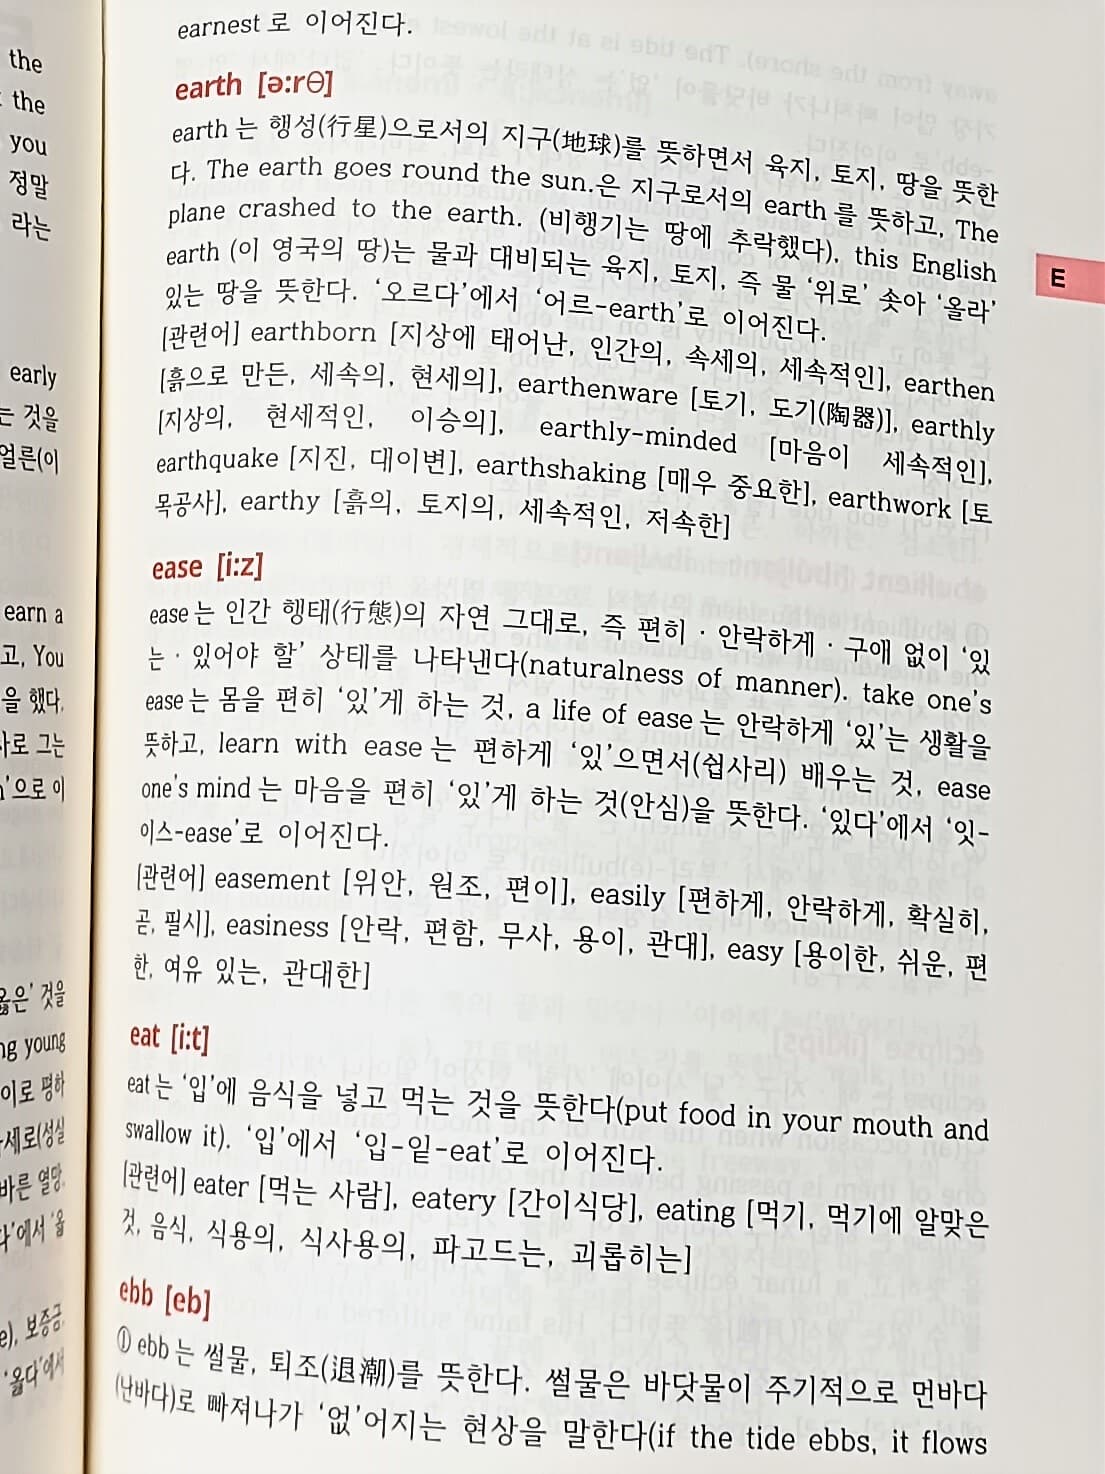 영어 속에 우리말,우리말 속에 영어 -Korean in English, English in Korean-157/230/45,1072쪽,하드커버-최상급-